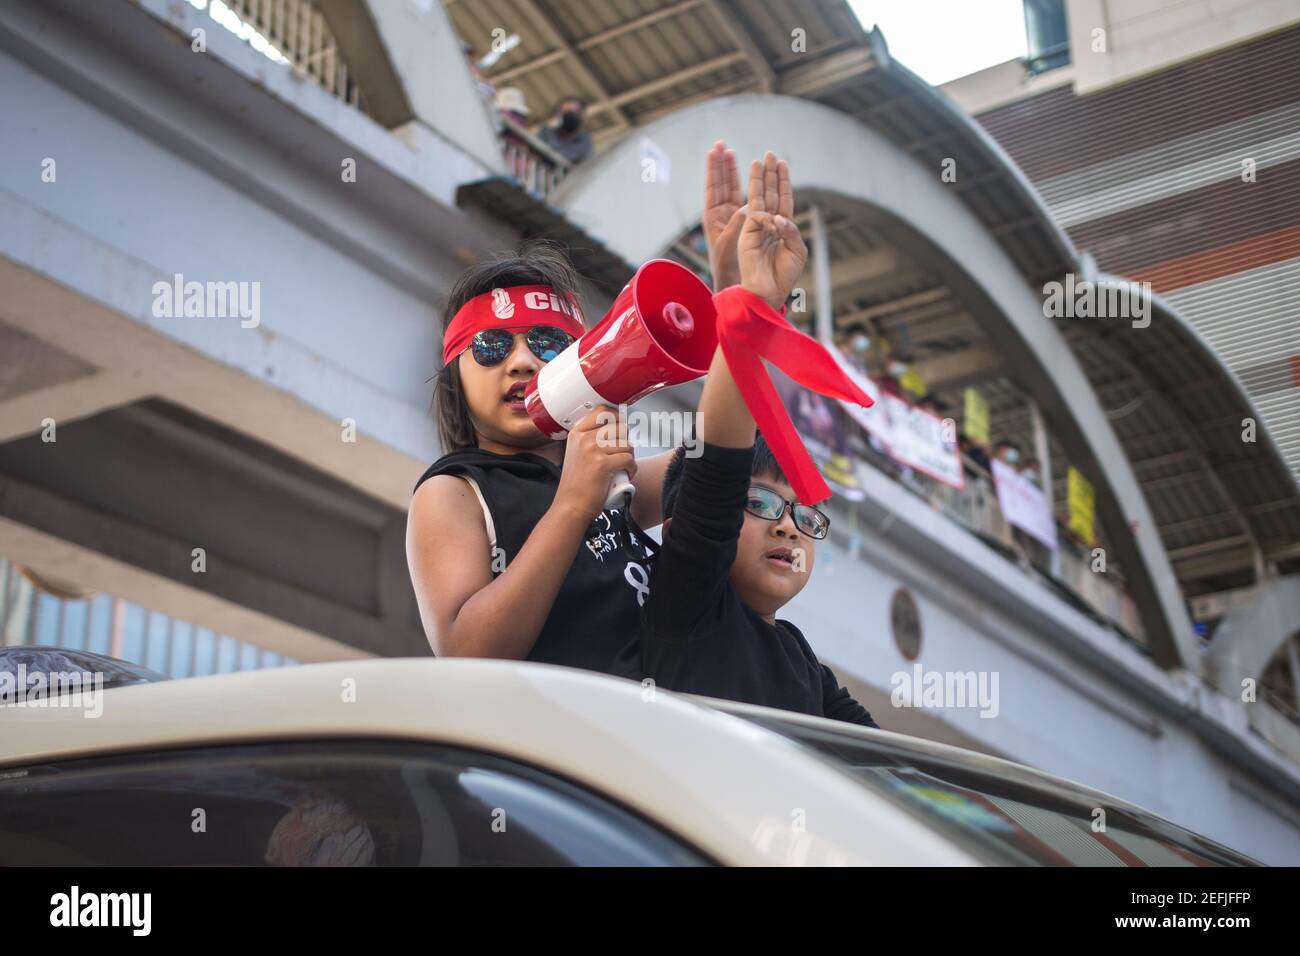 I bambini che fanno il saluto a tre dita mentre si parla di un megafono, durante una dimostrazione contro il colpo di stato militare nel centro di Yangon.il consigliere di Stato militare detenuto da Myanmar Aung San Suu Kyi il 01 febbraio, 2021 e ha dichiarato uno stato di emergenza mentre coglie il potere nel paese per un anno dopo aver perso le elezioni contro la Lega nazionale per la democrazia (NLD). Foto Stock